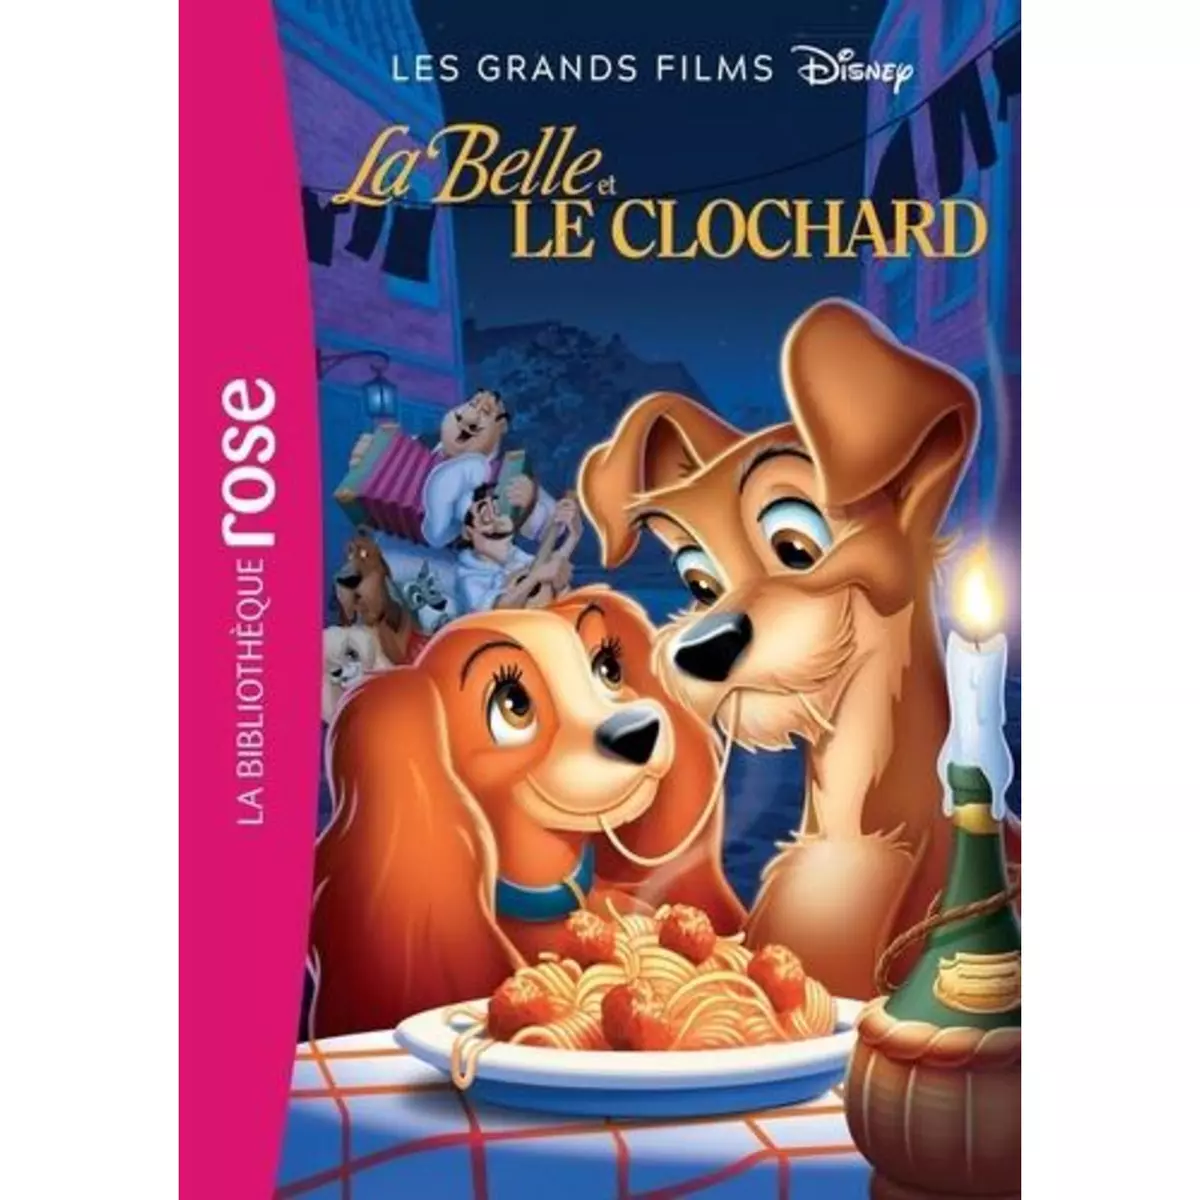  LES GRANDS FILMS DISNEY TOME 6 : LA BELLE ET LE CLOCHARD. LE ROMAN DU FILM, Disney